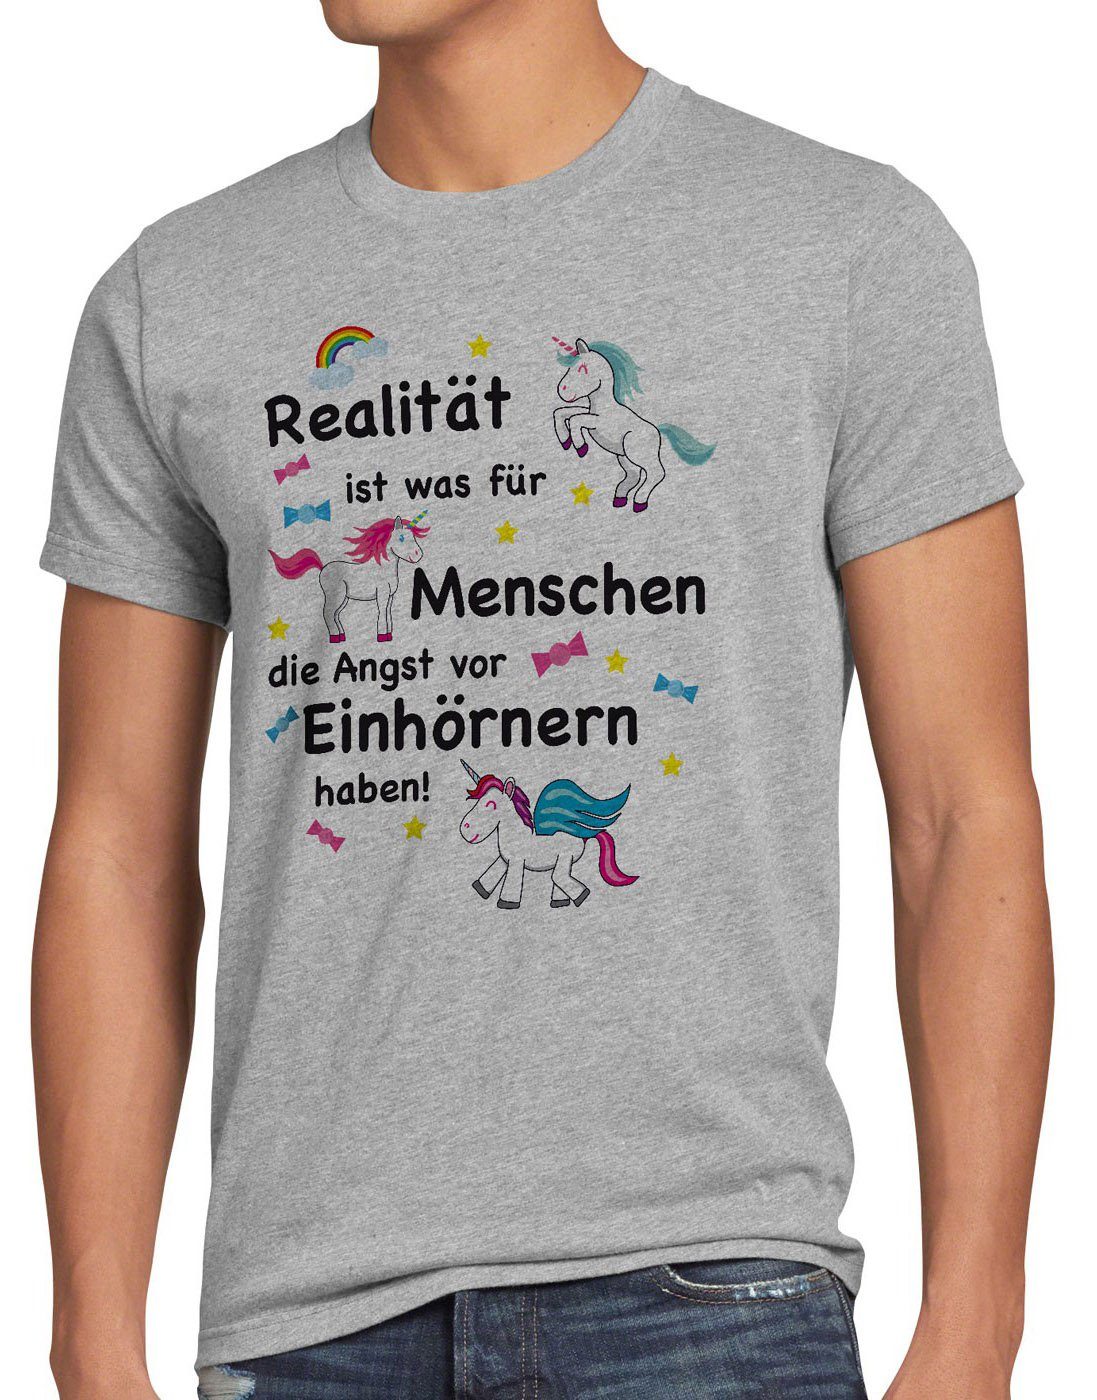 haben für Einhorn Herren ist Unicorn meliert grau style3 T-Shirt Einhörnern Realität Menschen Print-Shirt Angst